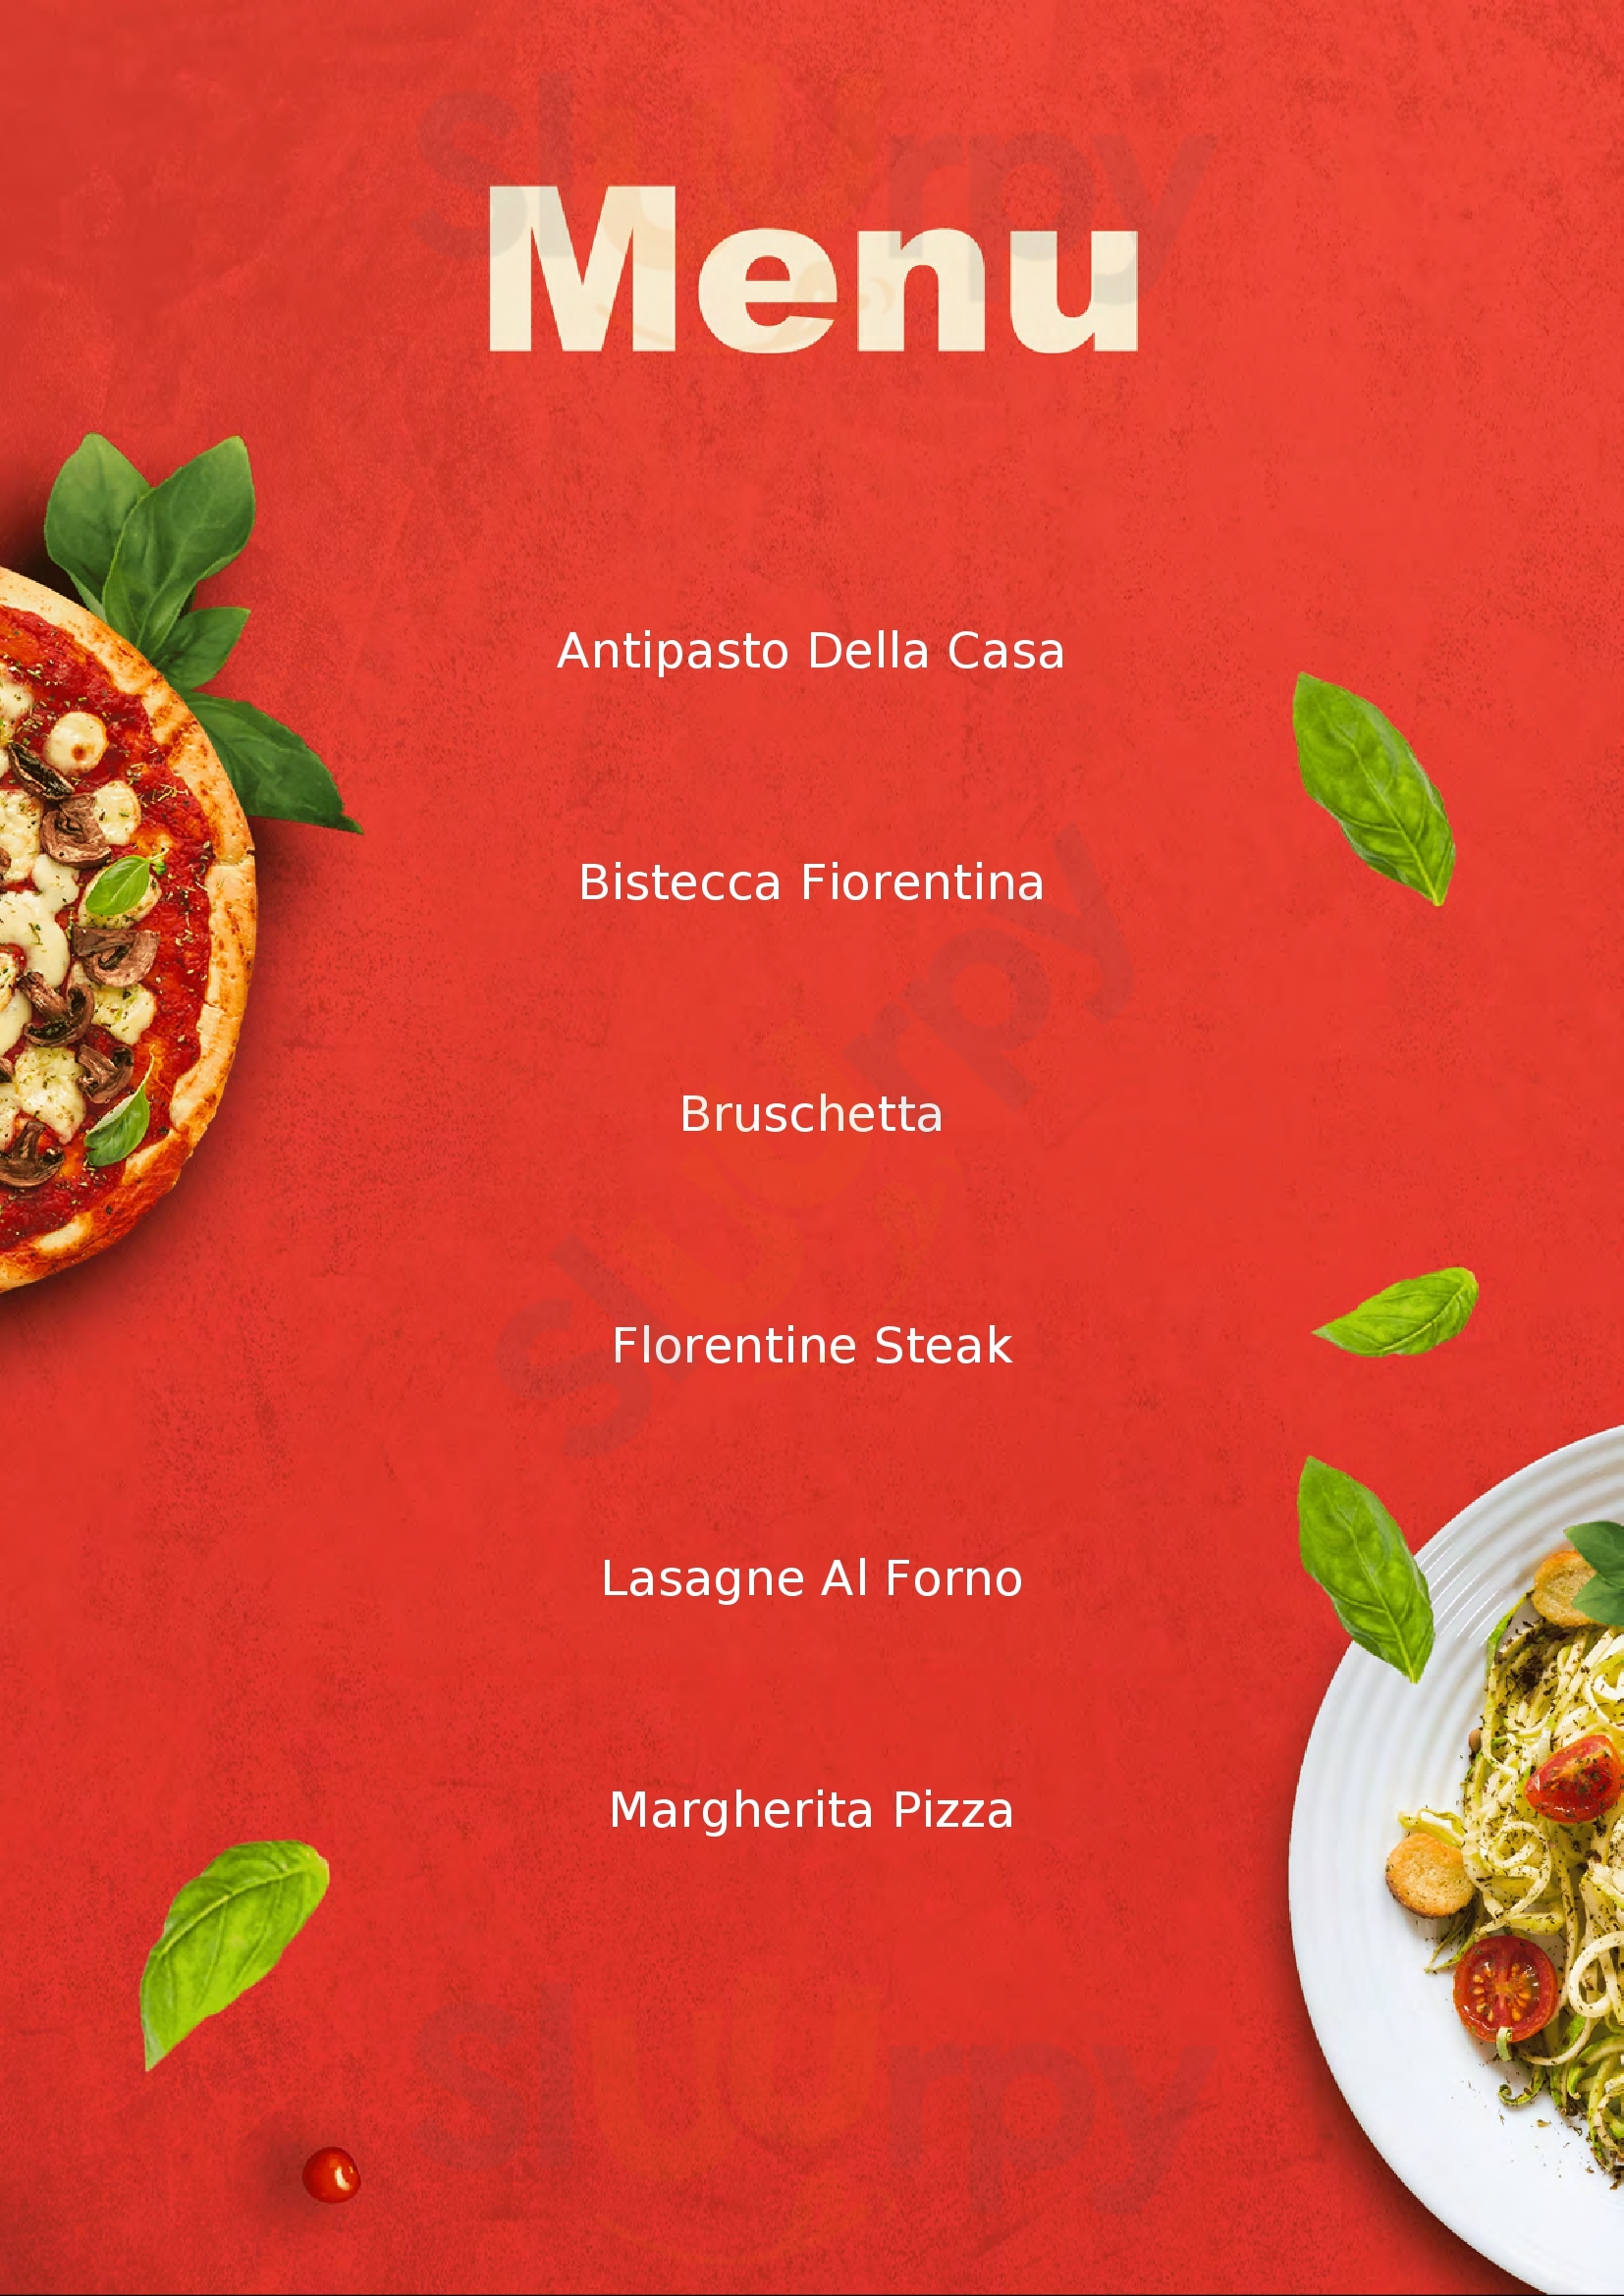 Novecento Ristorante Pizzeria Pisa menù 1 pagina